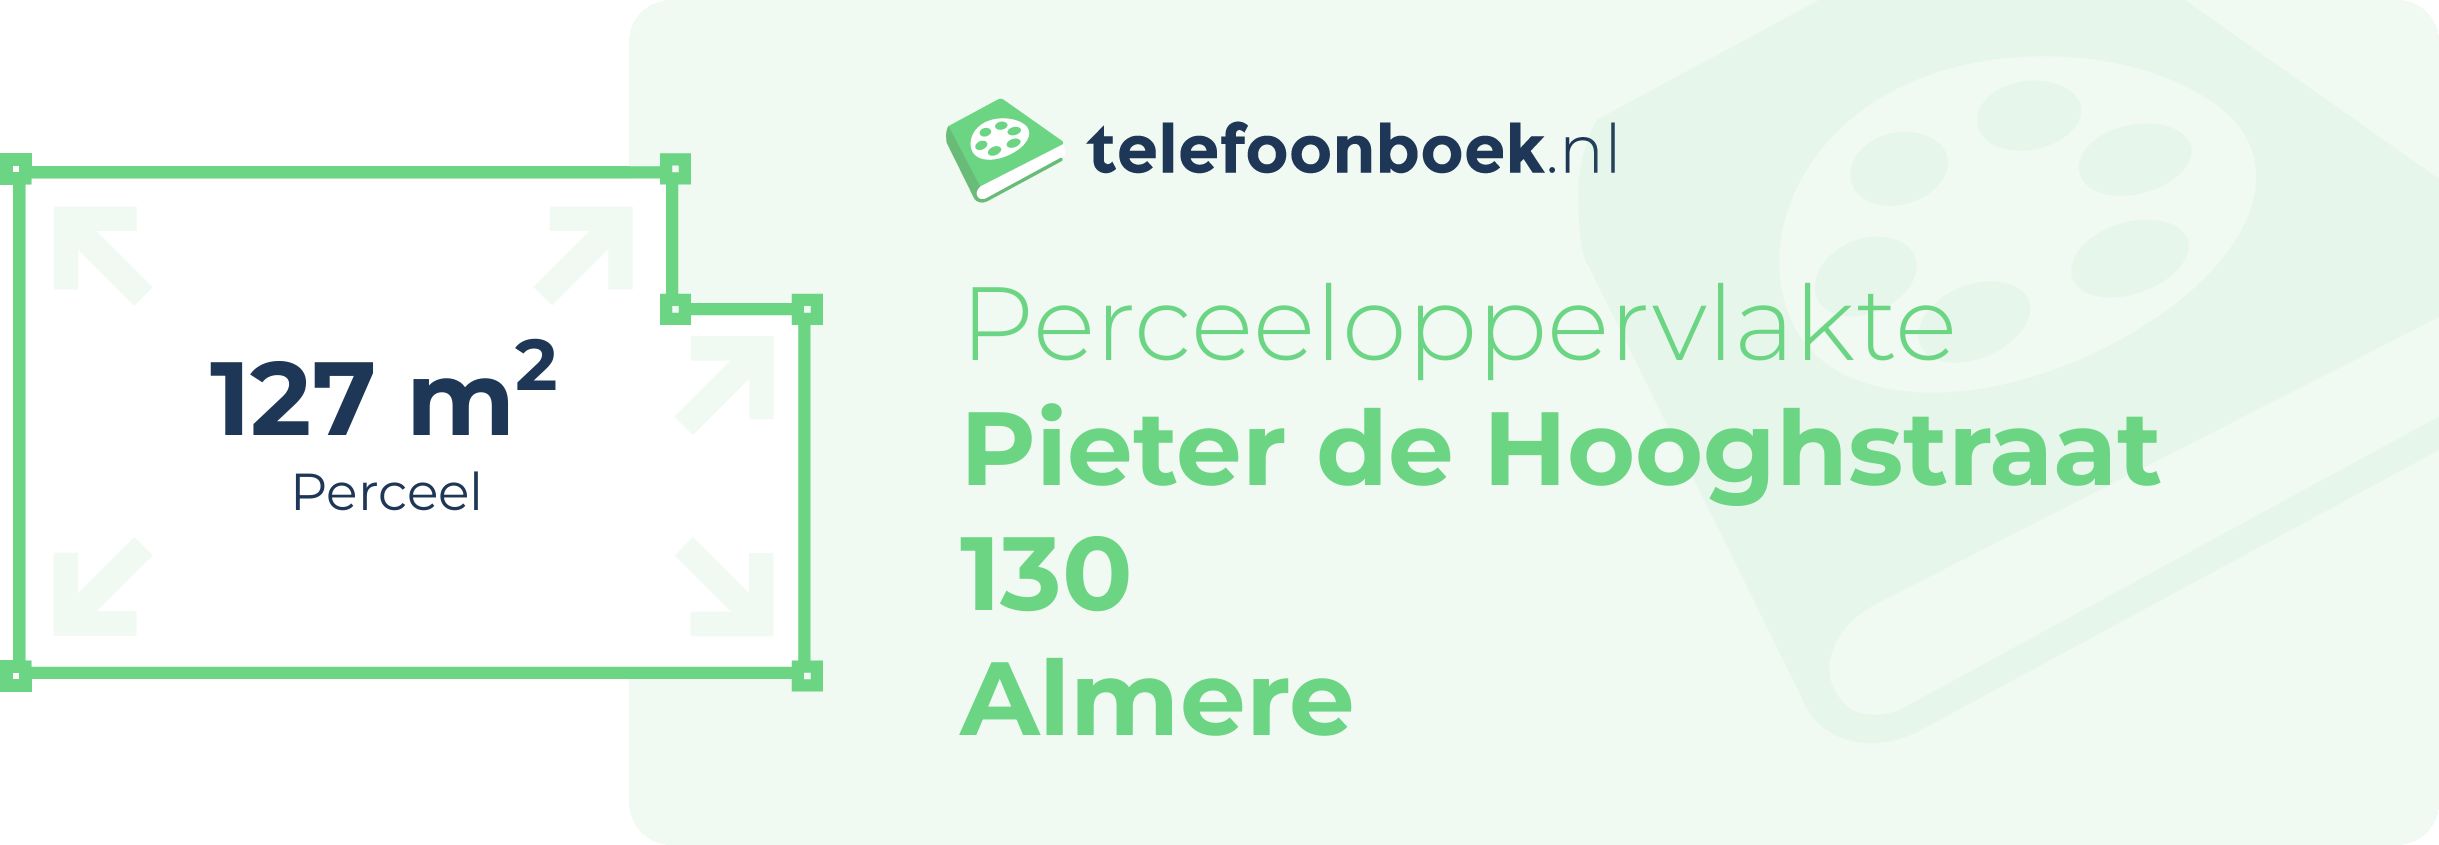 Perceeloppervlakte Pieter De Hooghstraat 130 Almere